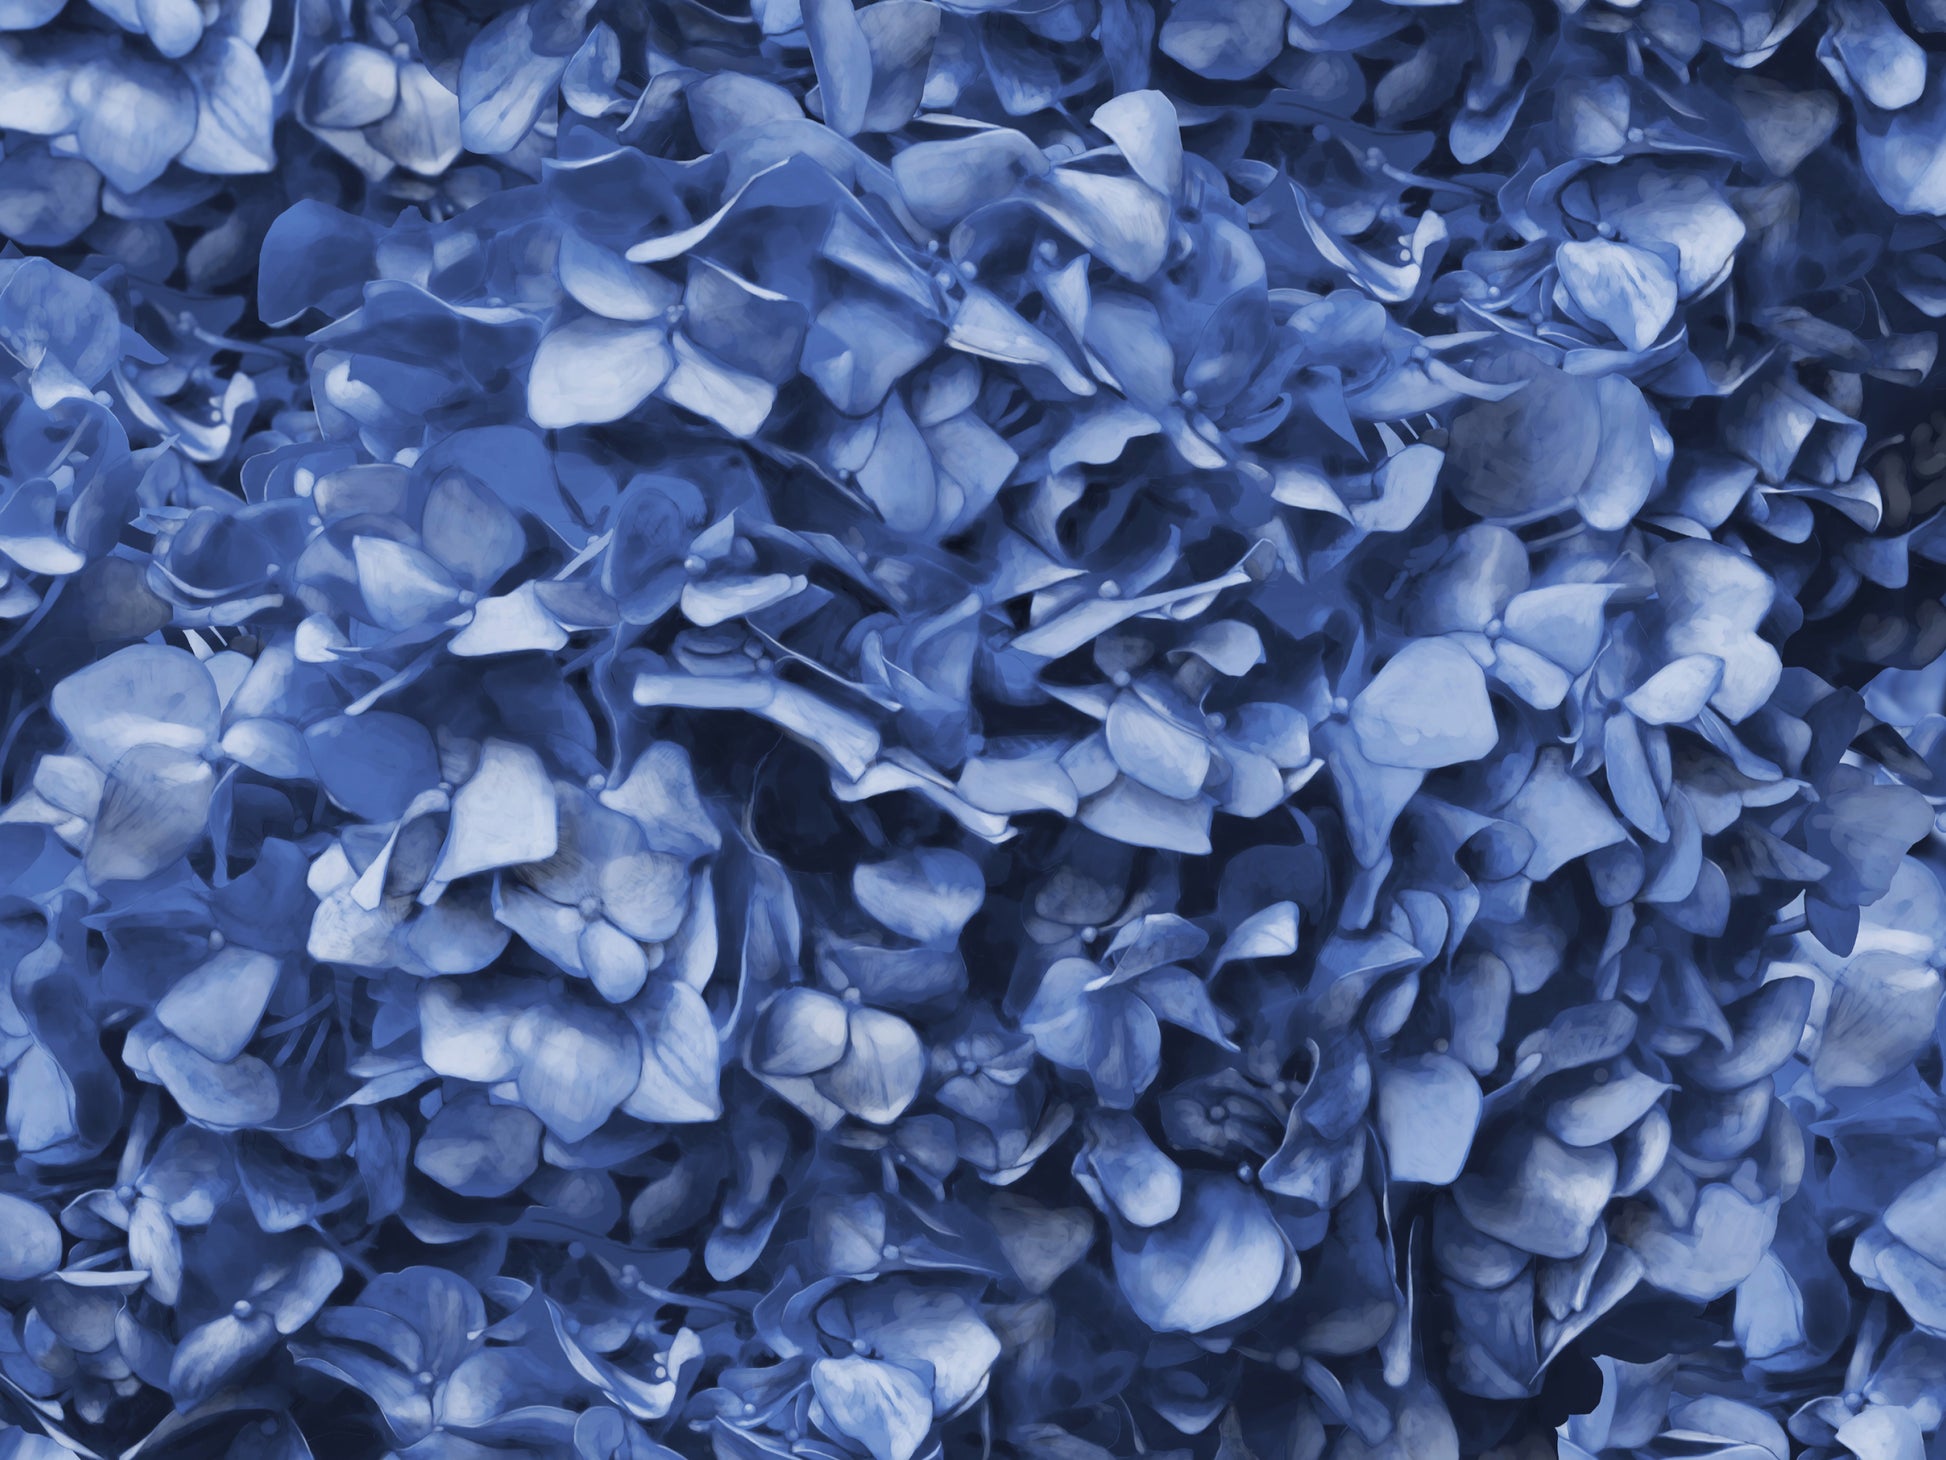 Dusty Blue Hydrangea Mural Wallpaper